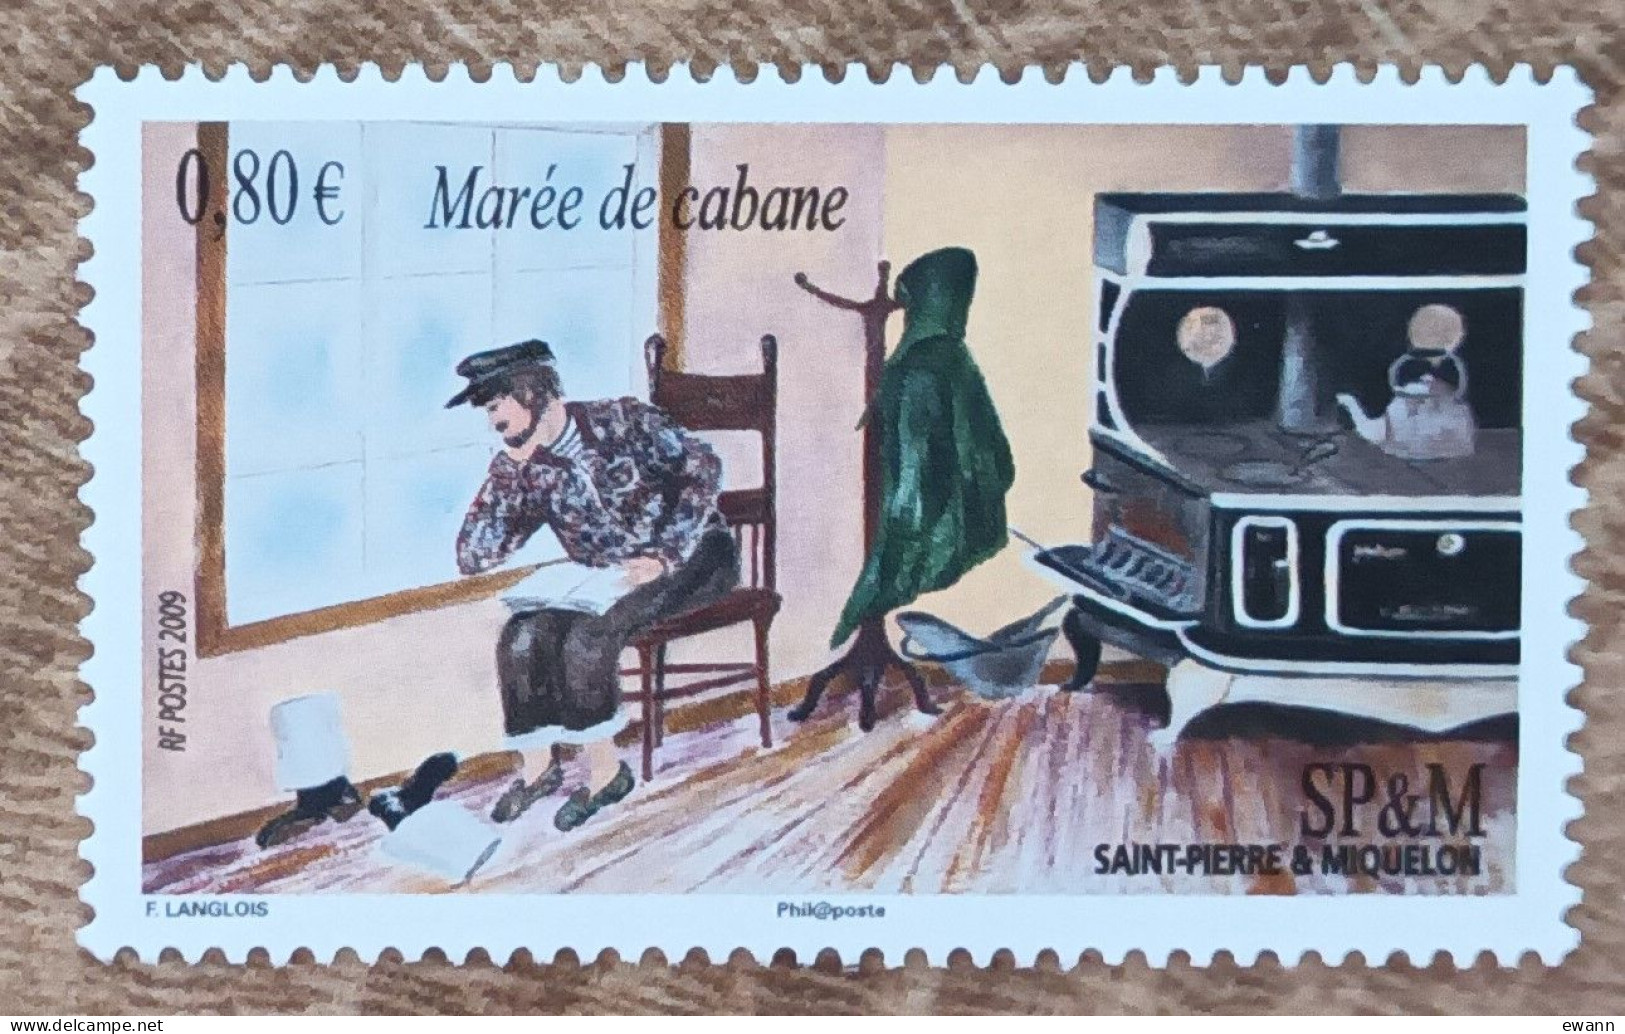 Saint Pierre Et Miquelon - YT N°959 - Expressions Locales / Marée De Cabane - 2009 - Neuf - Ungebraucht